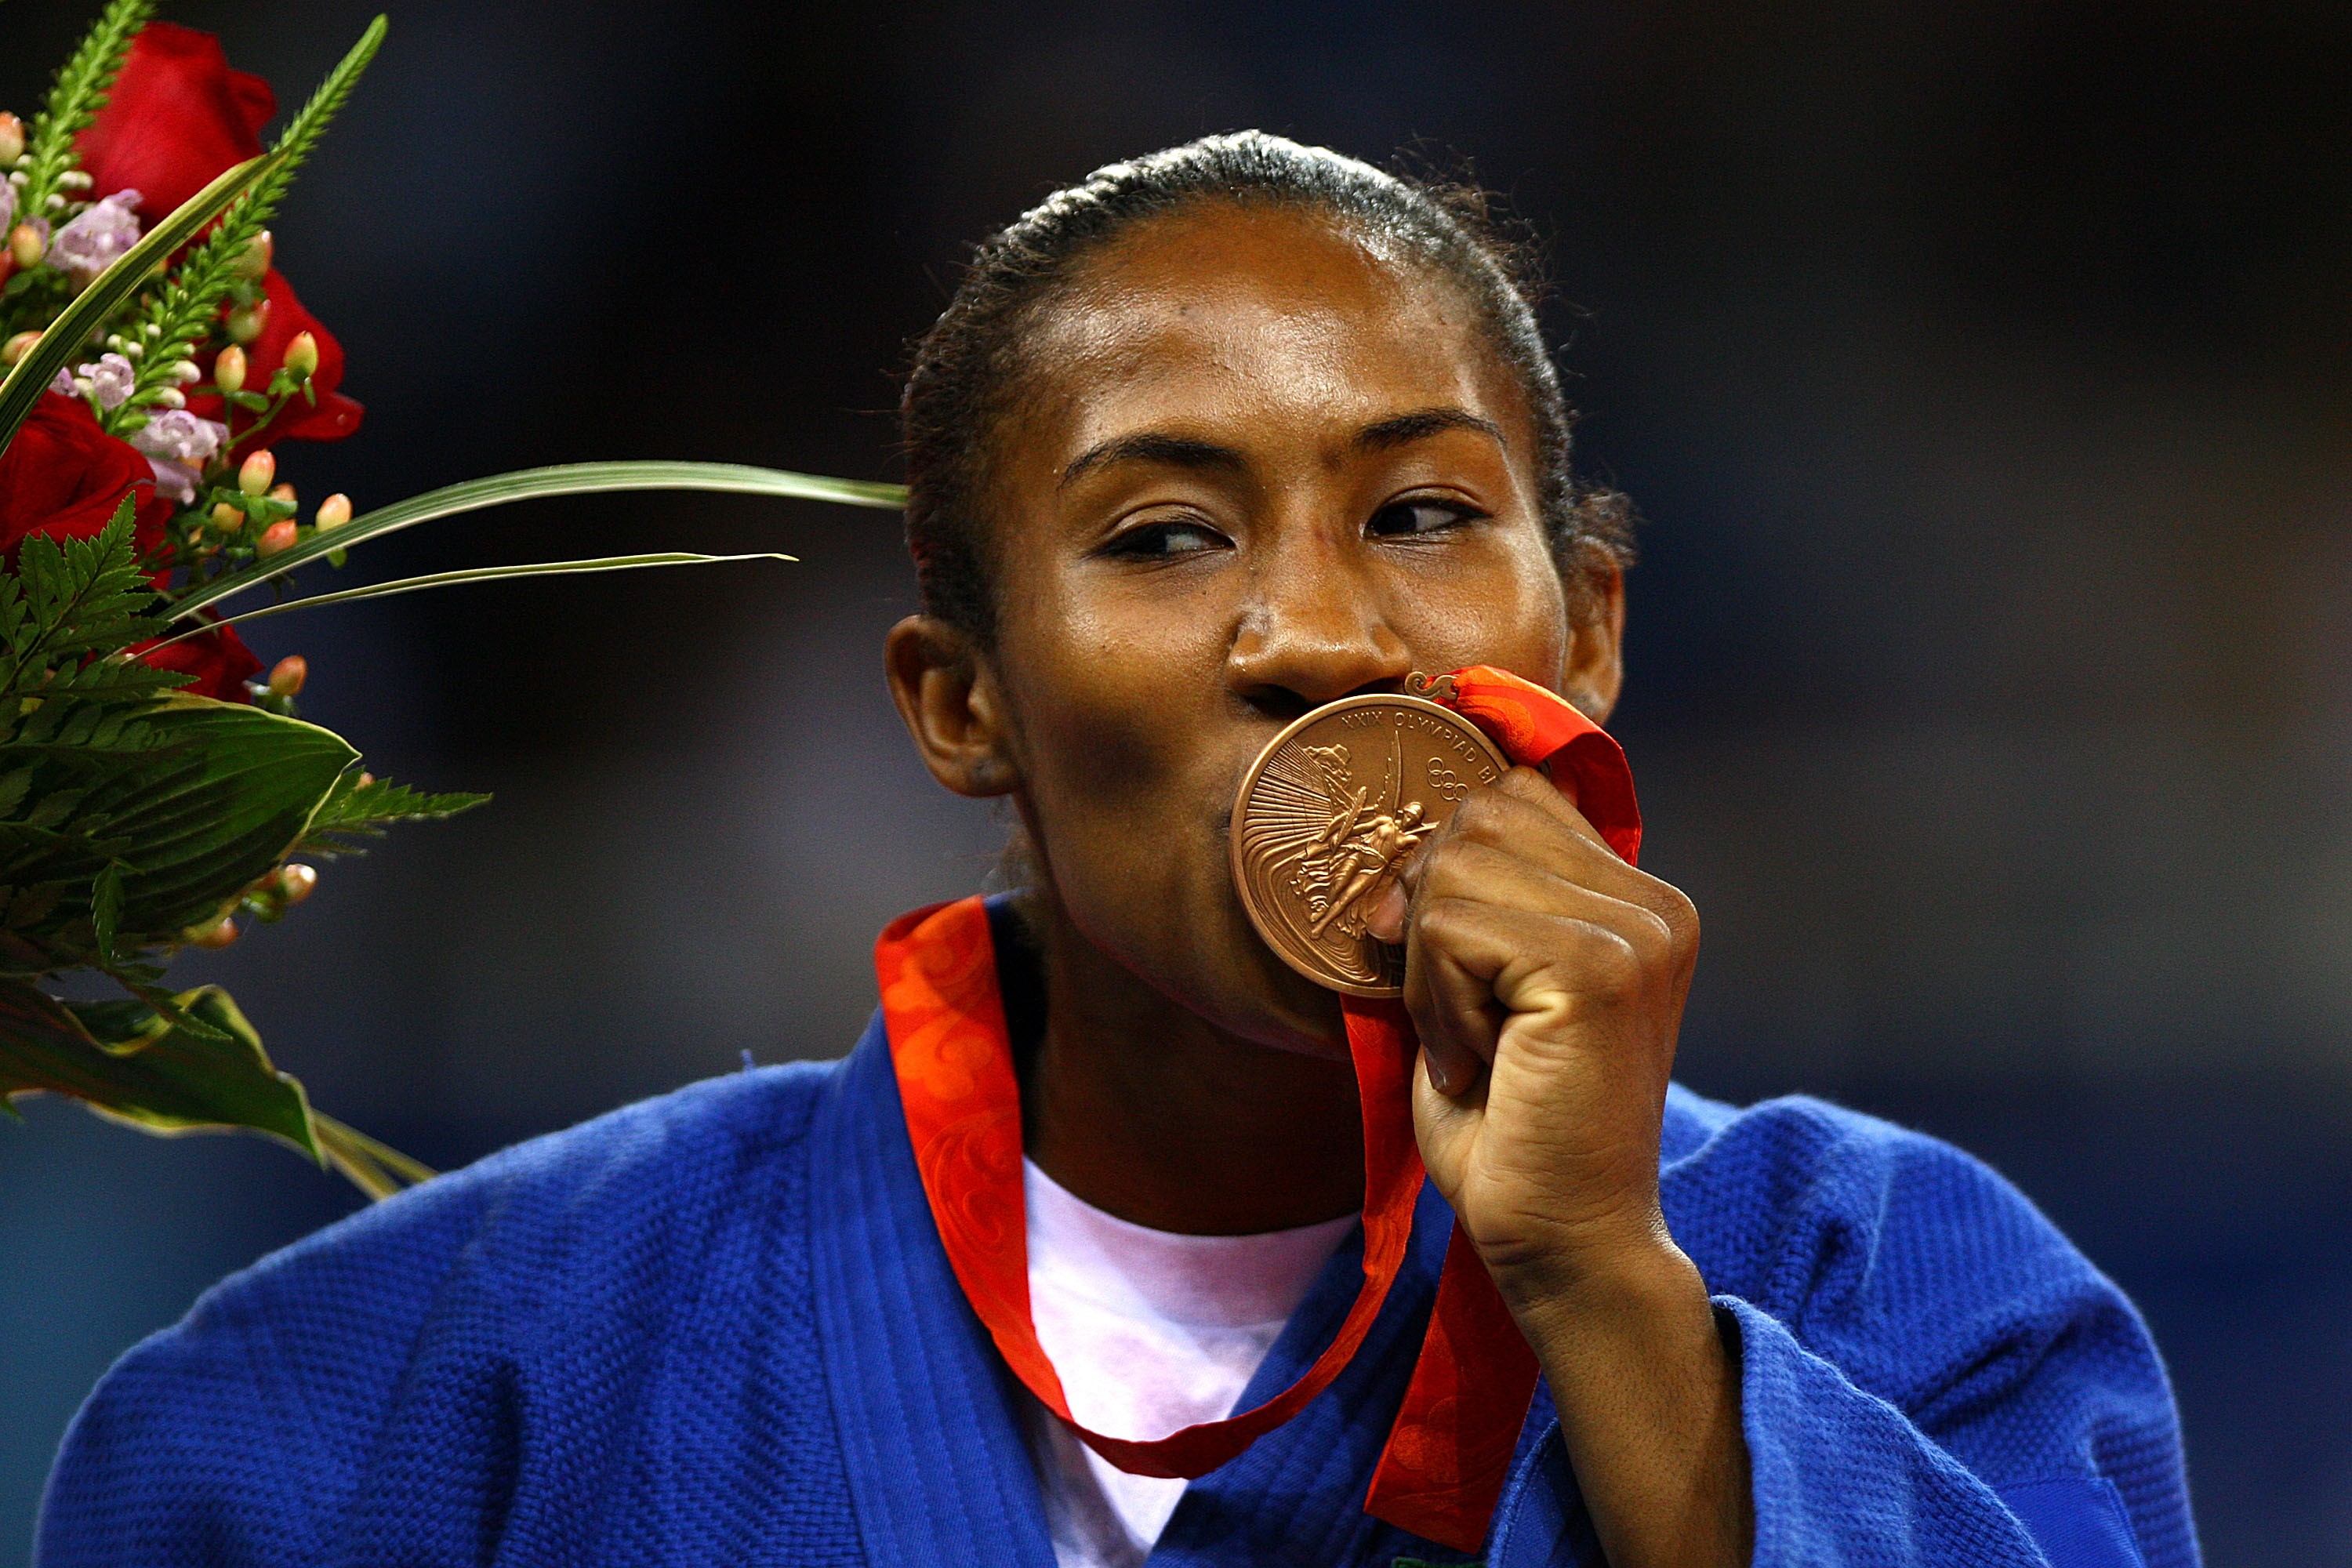 Ketleyn Quadros com sua medalha de bronze nos Jogos de Pequim, em 2008 (Foto: Getty Images)